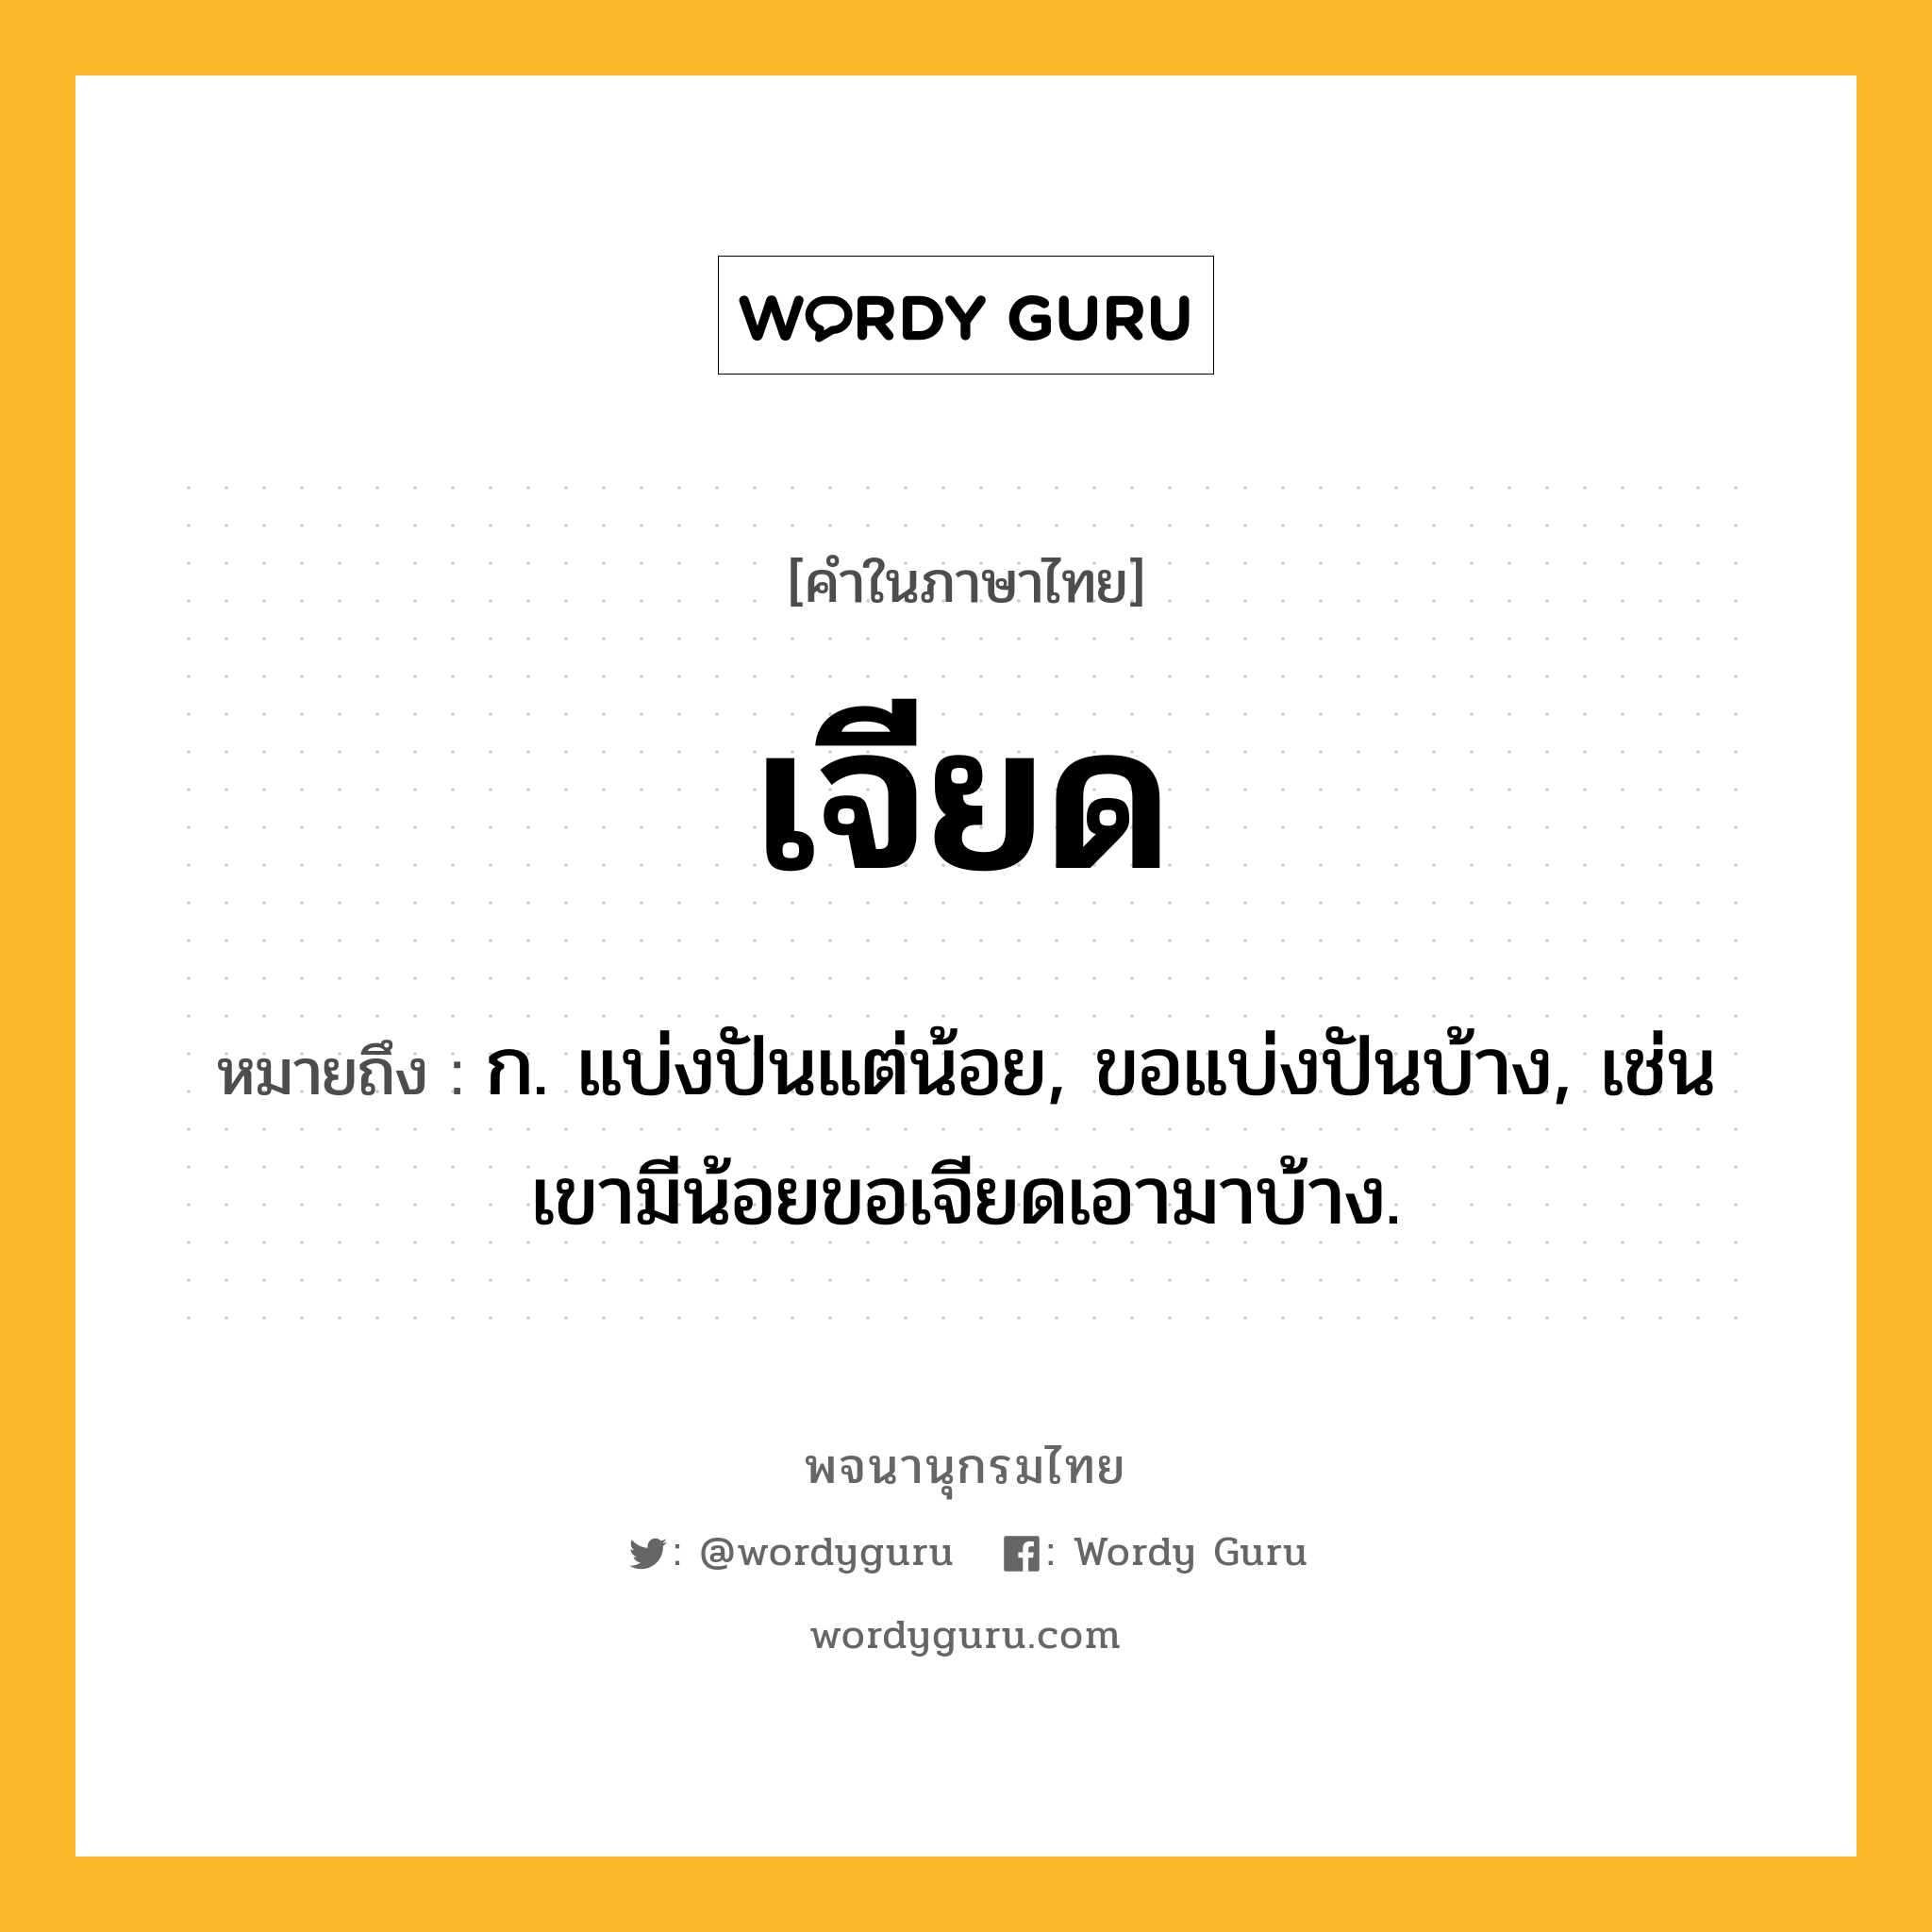 เจียด หมายถึงอะไร?, คำในภาษาไทย เจียด หมายถึง ก. แบ่งปันแต่น้อย, ขอแบ่งปันบ้าง, เช่น เขามีน้อยขอเจียดเอามาบ้าง.